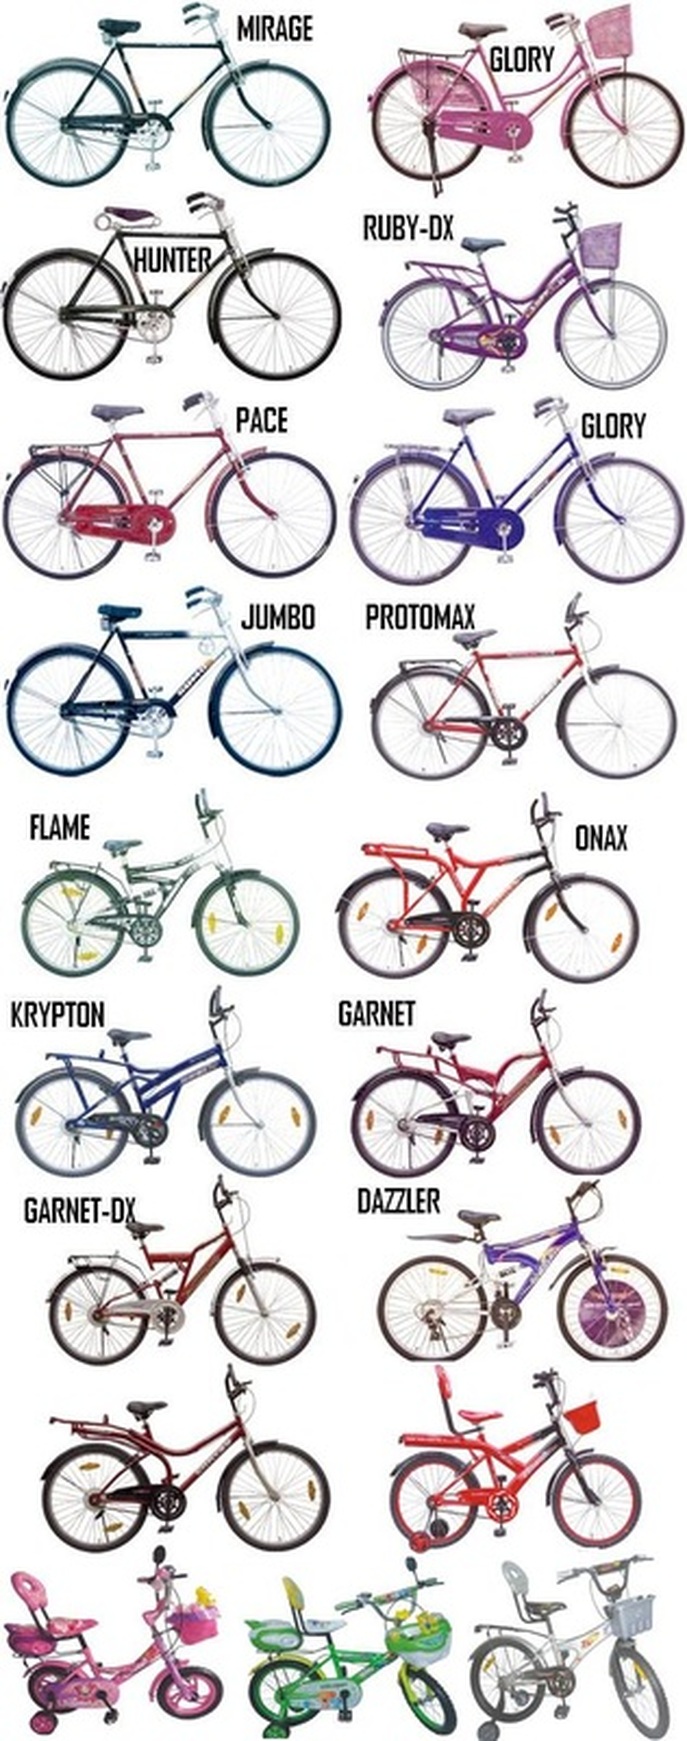 tata cycle image